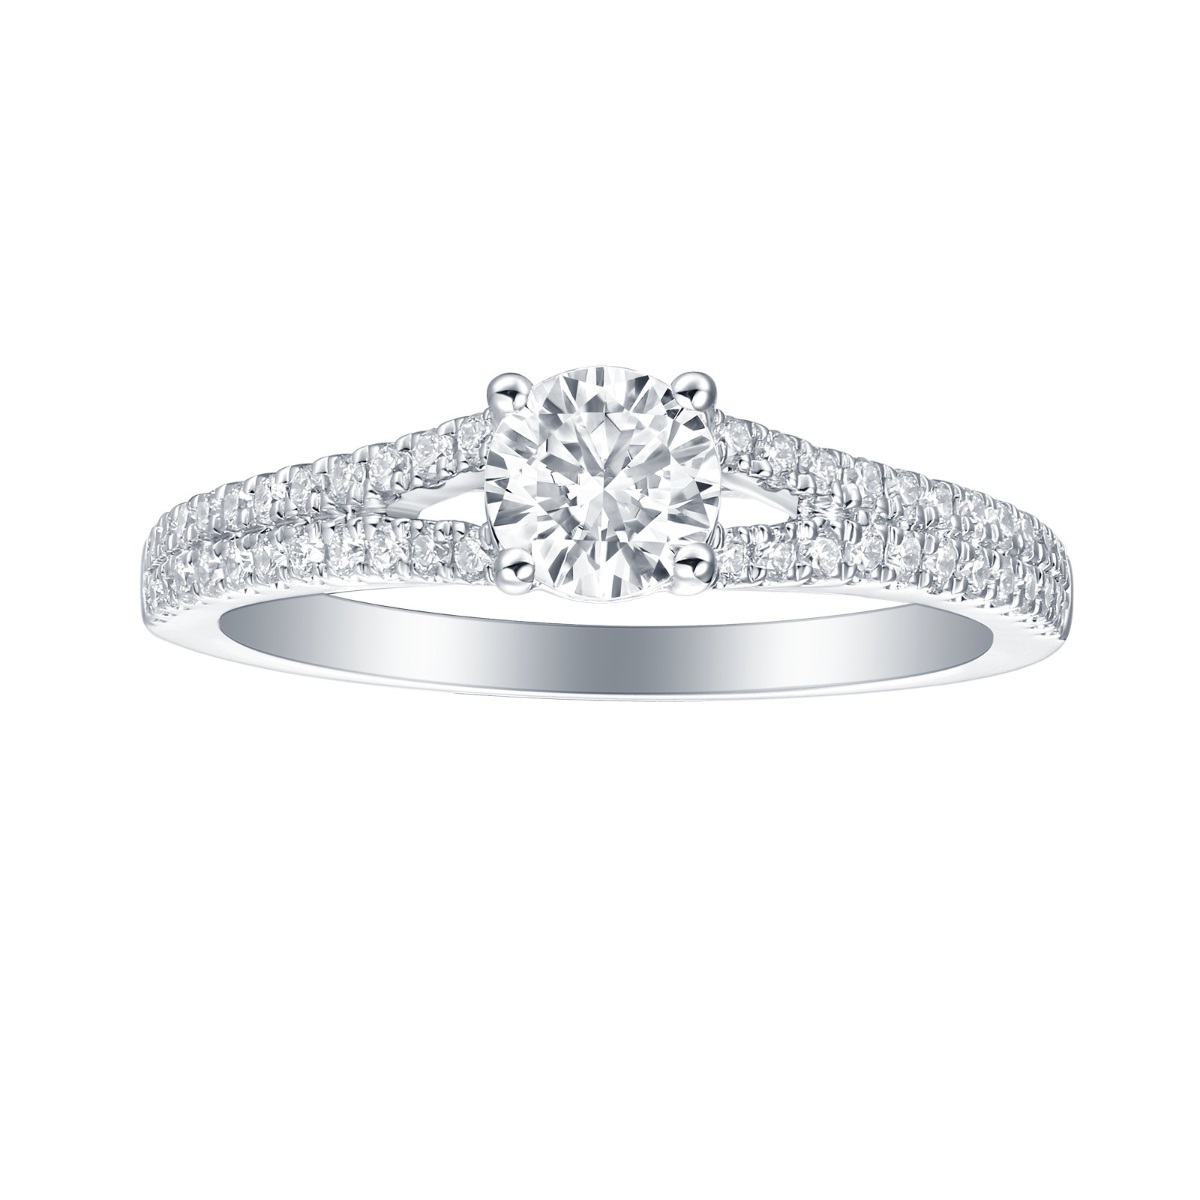 R35881WHT – 18K White Gold Diamond Ring, 1.28 TCW